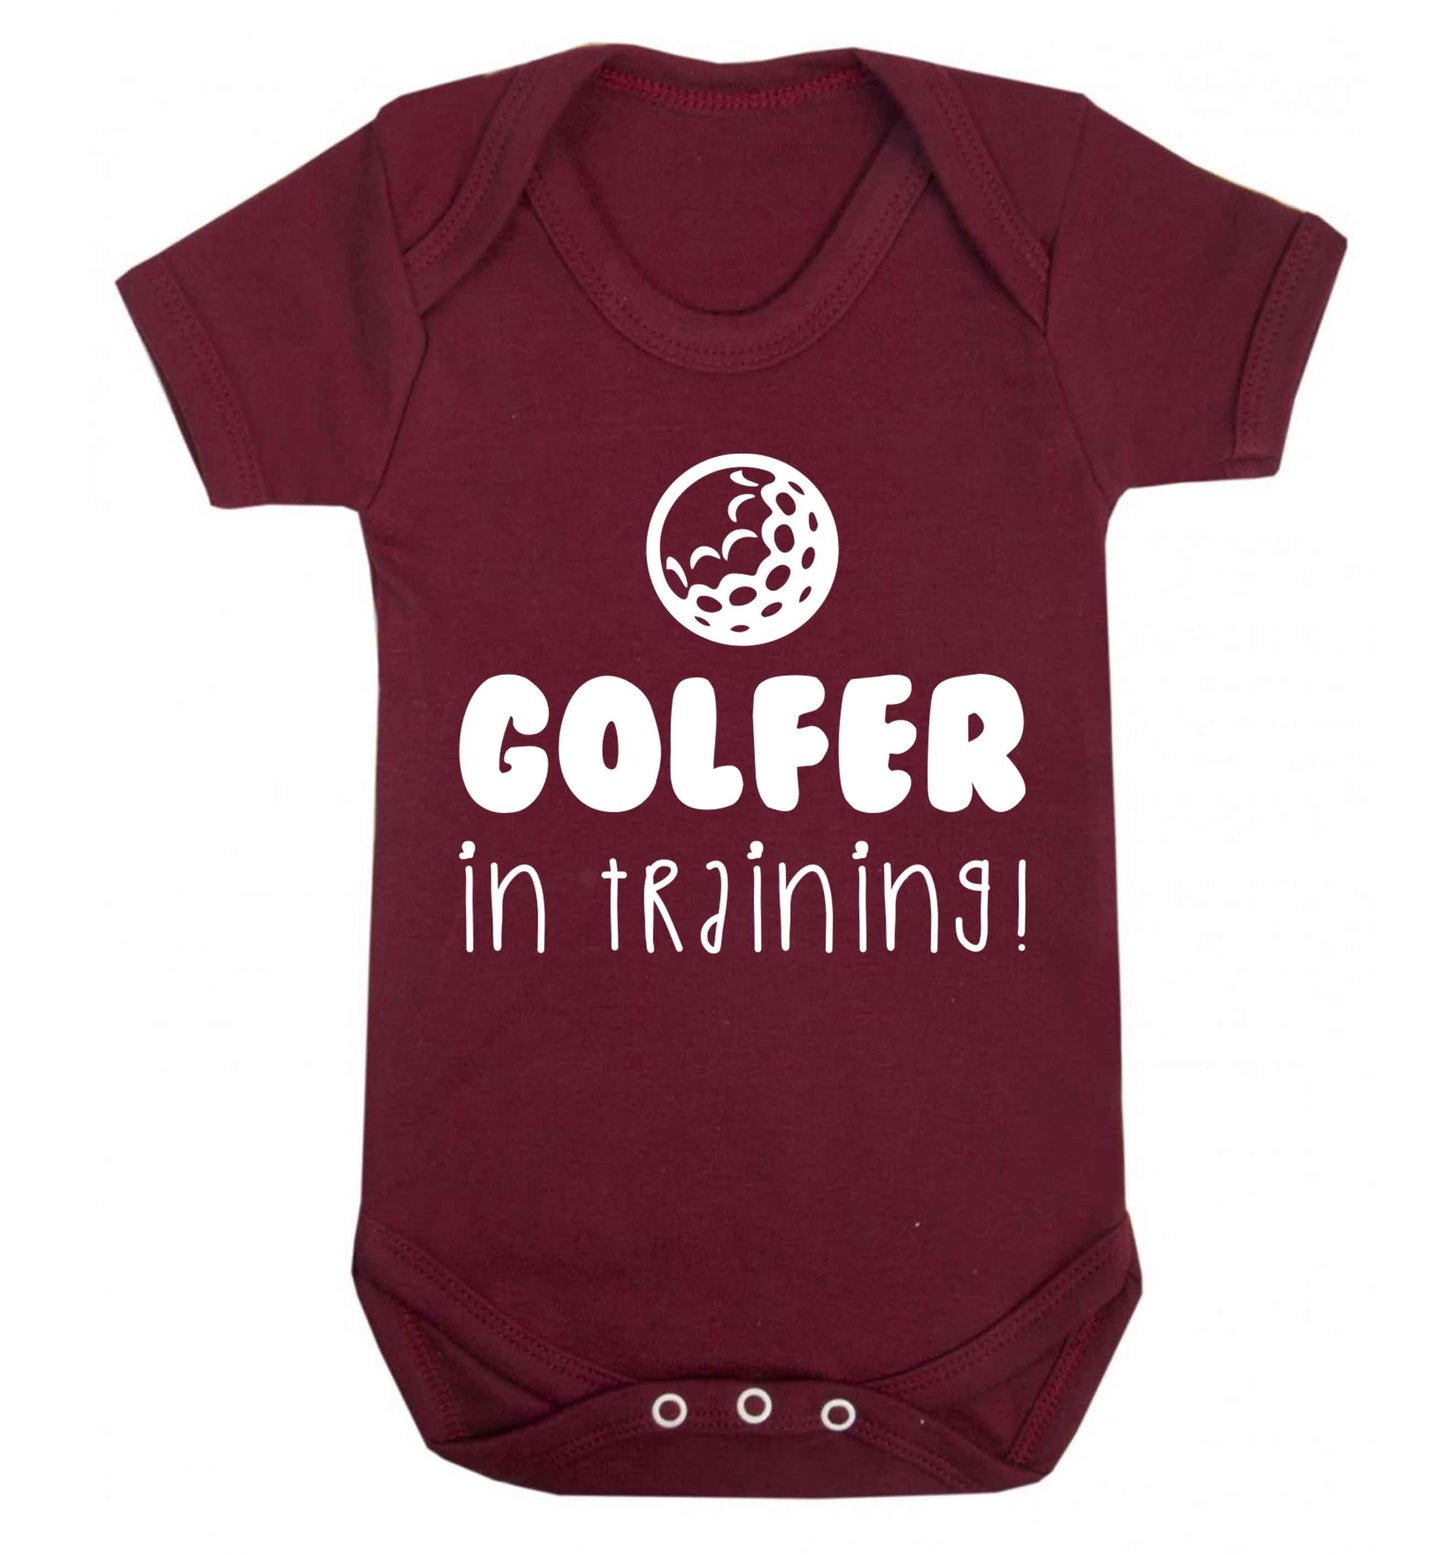 Golfer in training Baby Vest maroon 18-24 months